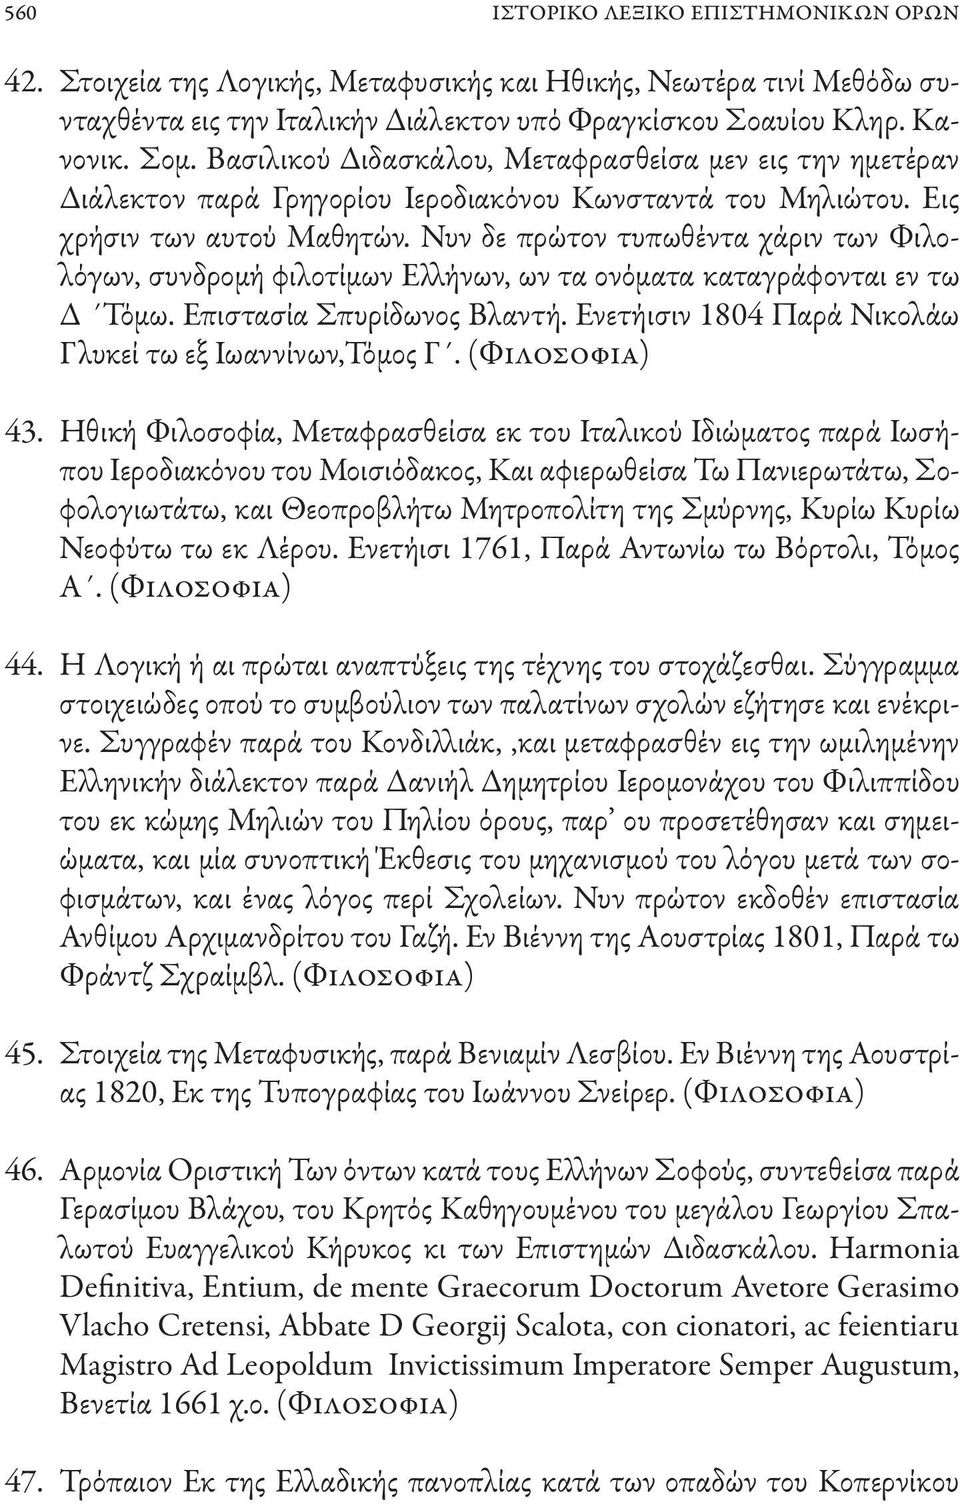 Νυν δε πρώτον τυπωθέντα χάριν των Φιλολόγων, συνδρομή φιλοτίμων Ελλήνων, ων τα ονόματα καταγράφονται εν τω Δ Τόμω. Επιστασία Σπυρίδωνος Βλαντή.